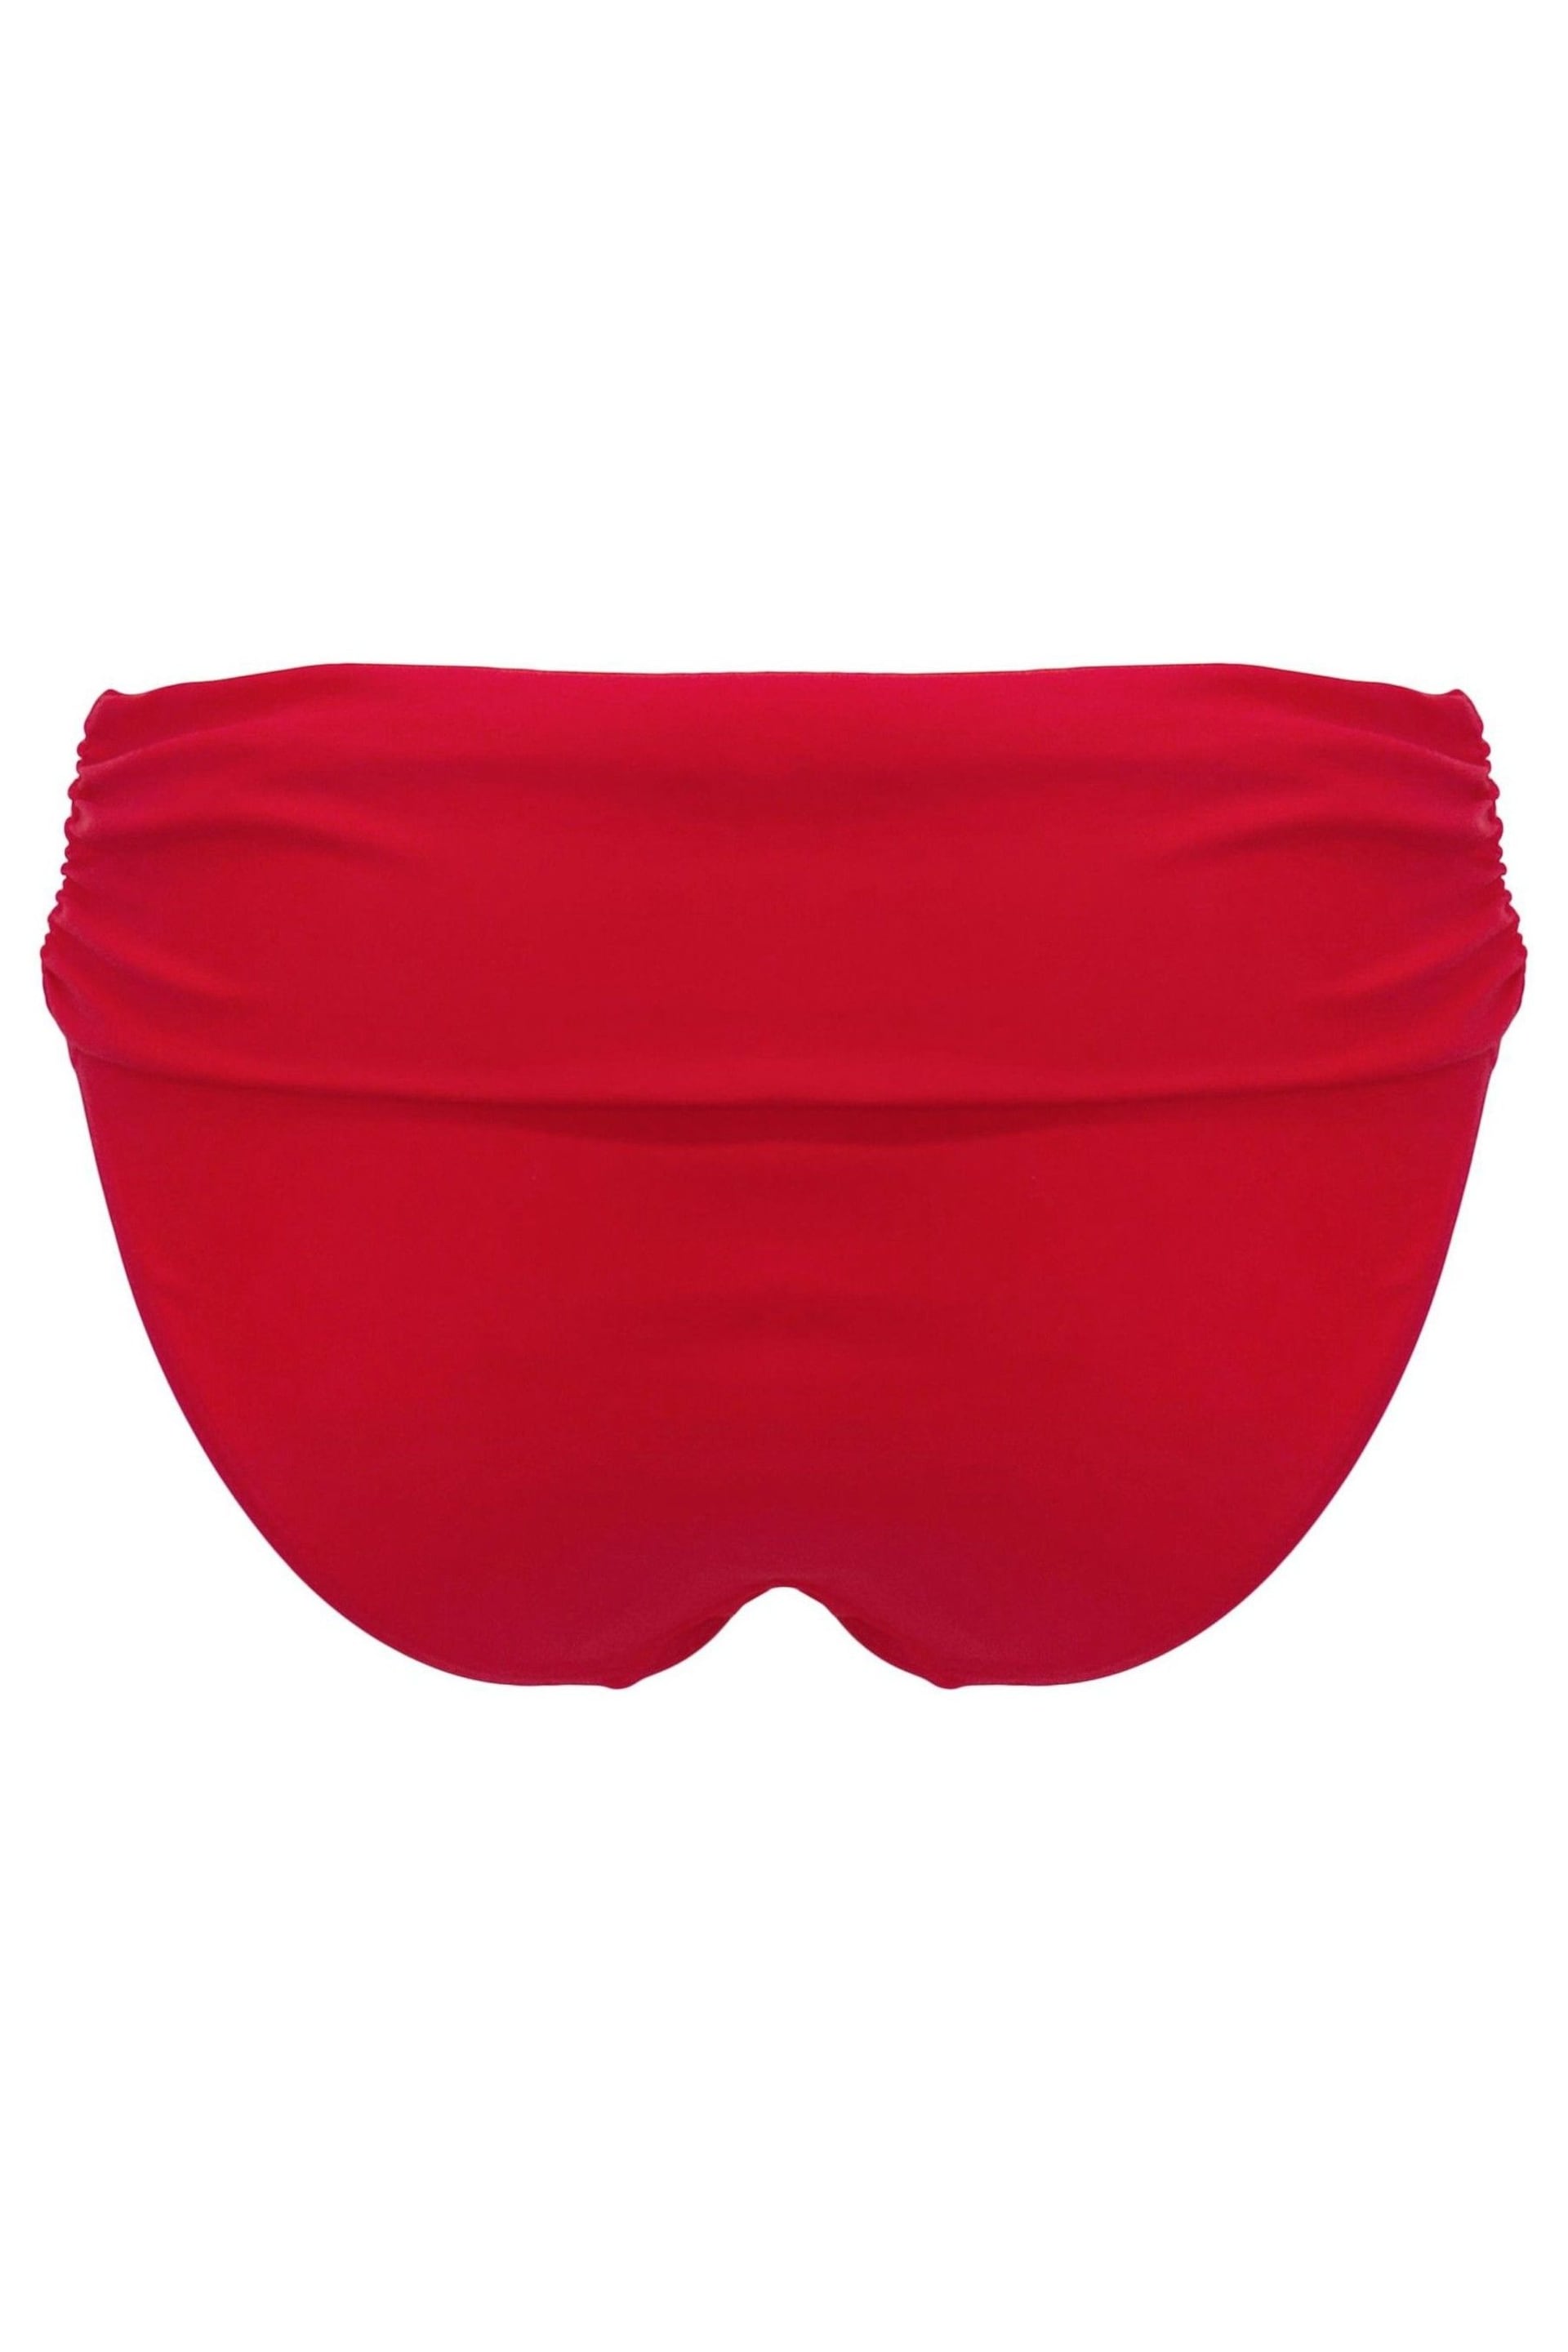 Pour Moi Red Free Spirit Foldover Bikini Briefs - Image 4 of 4